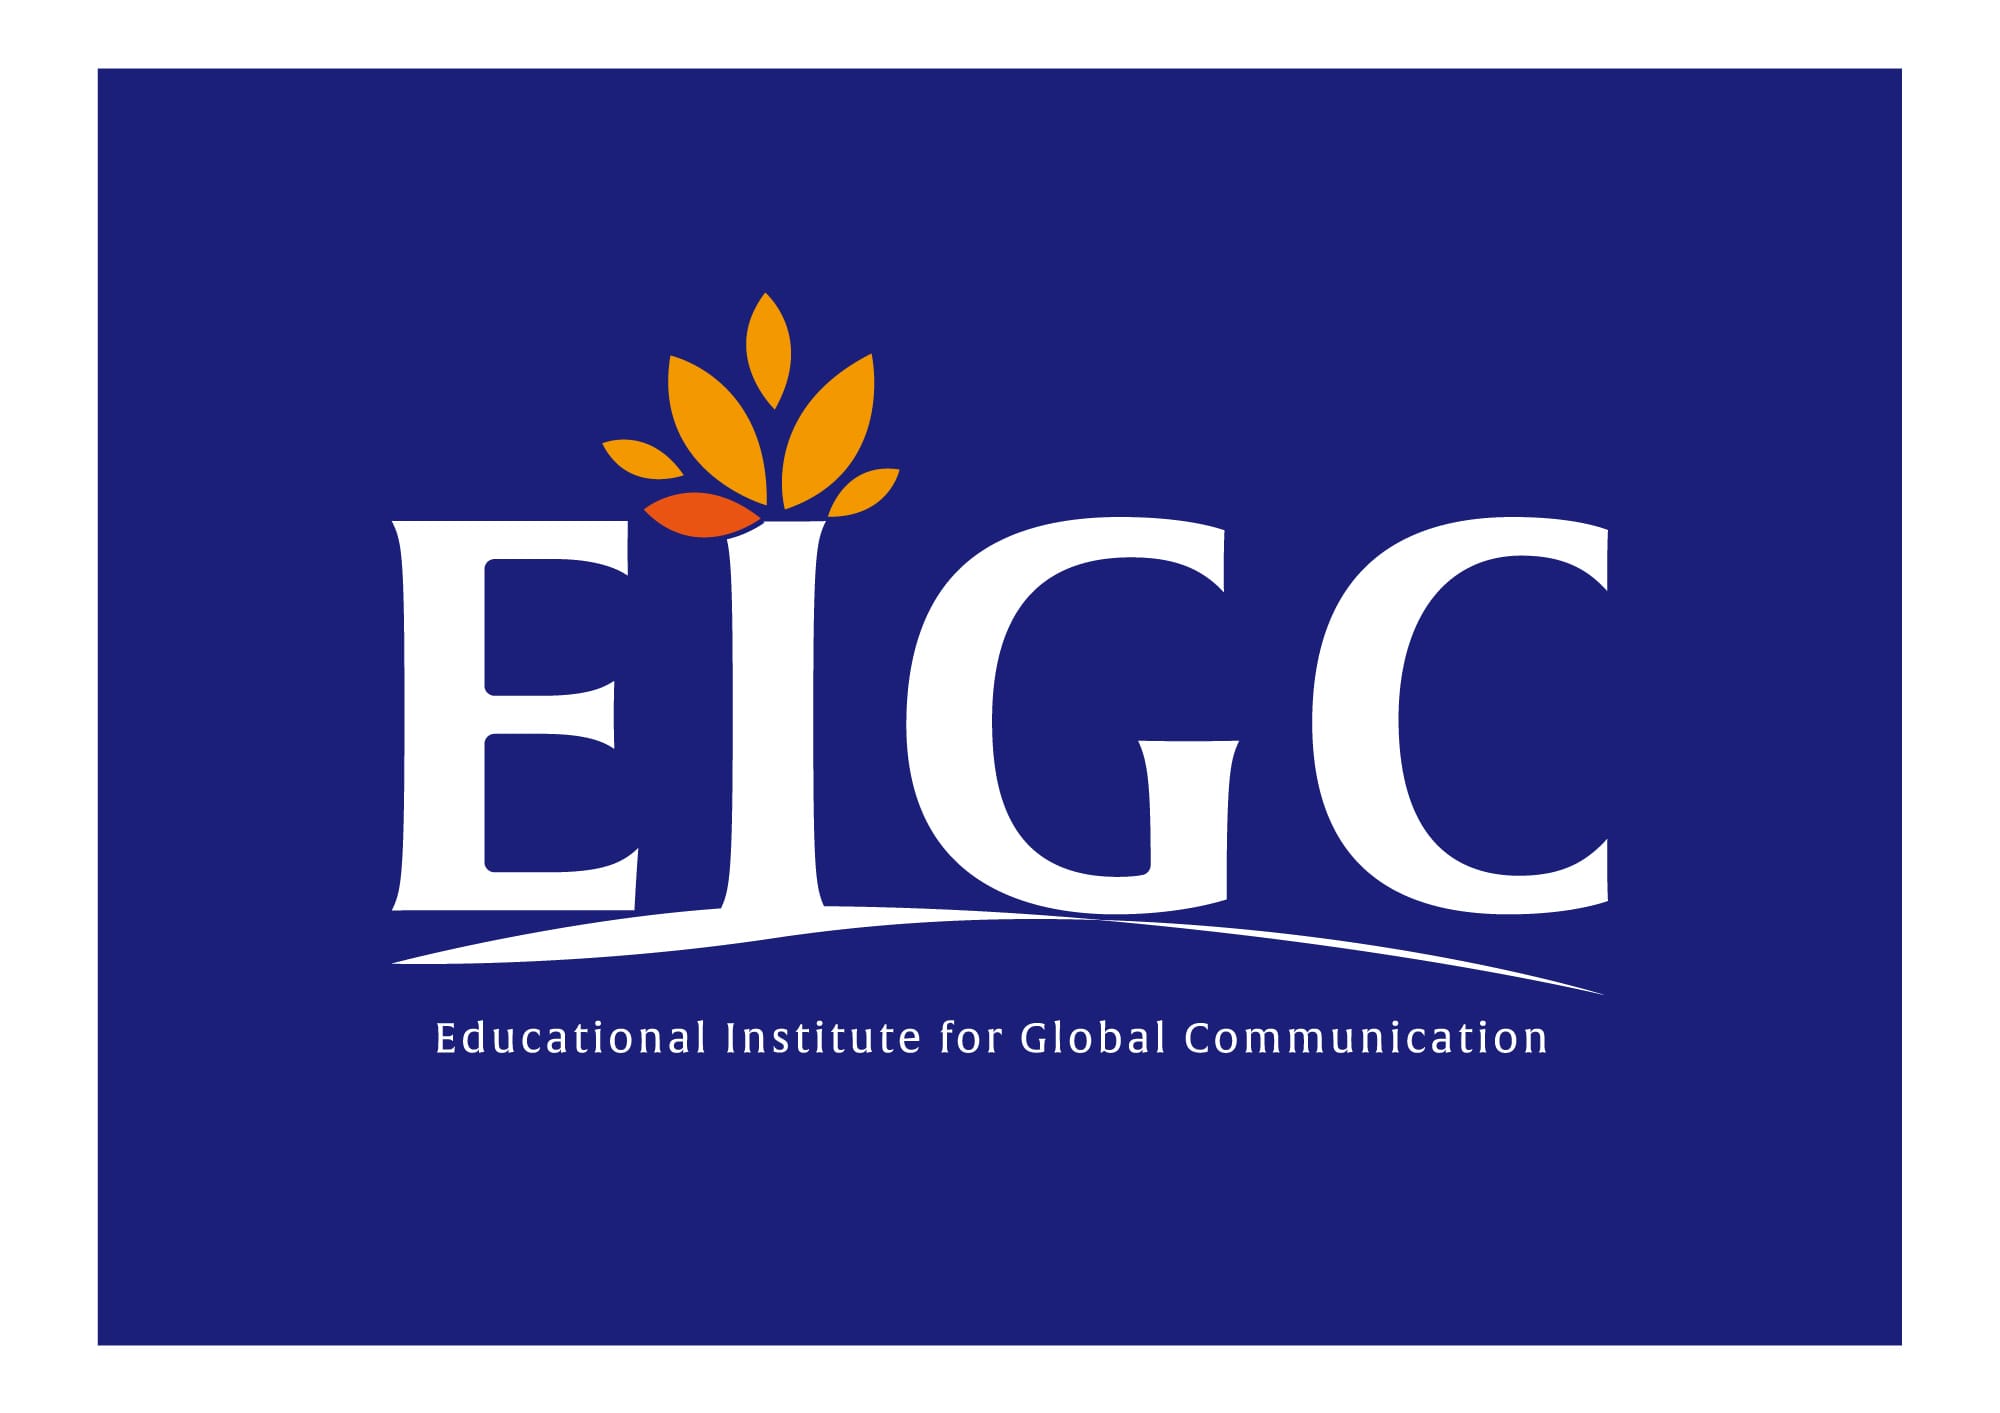 一般社団法人 EIGC(エイジック)